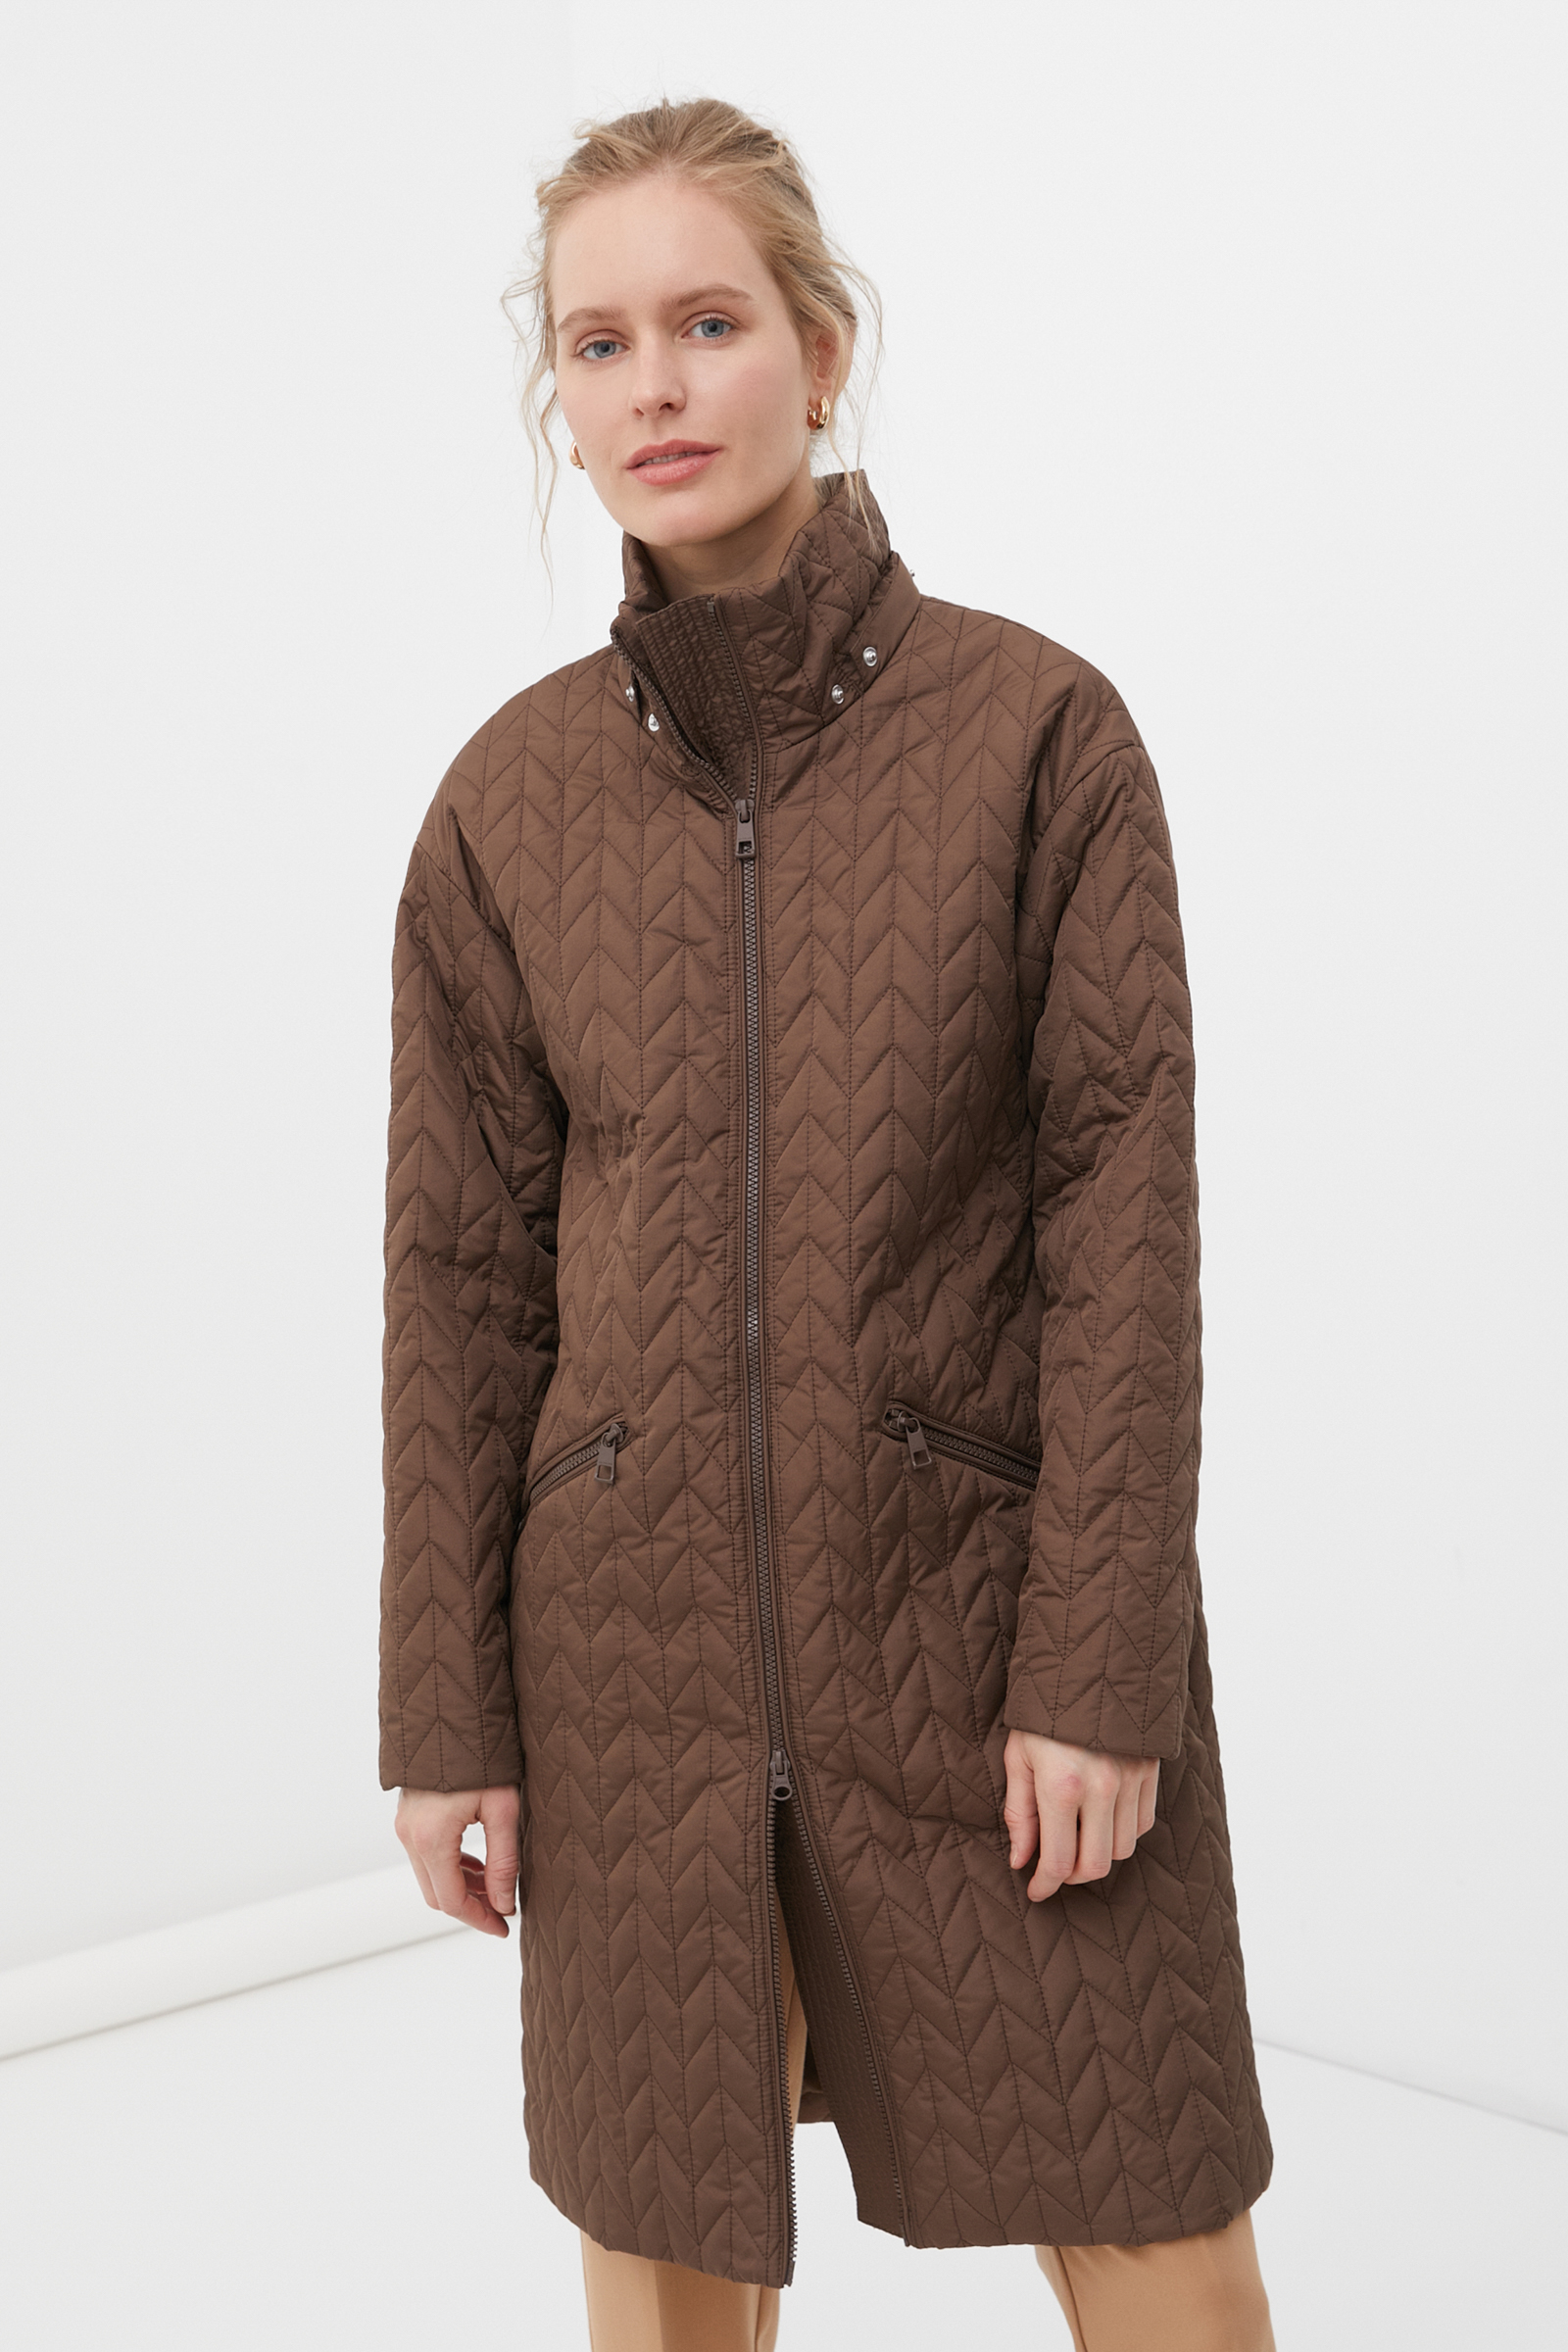 Пальто женское Finn Flare FBC11023 коричневое S